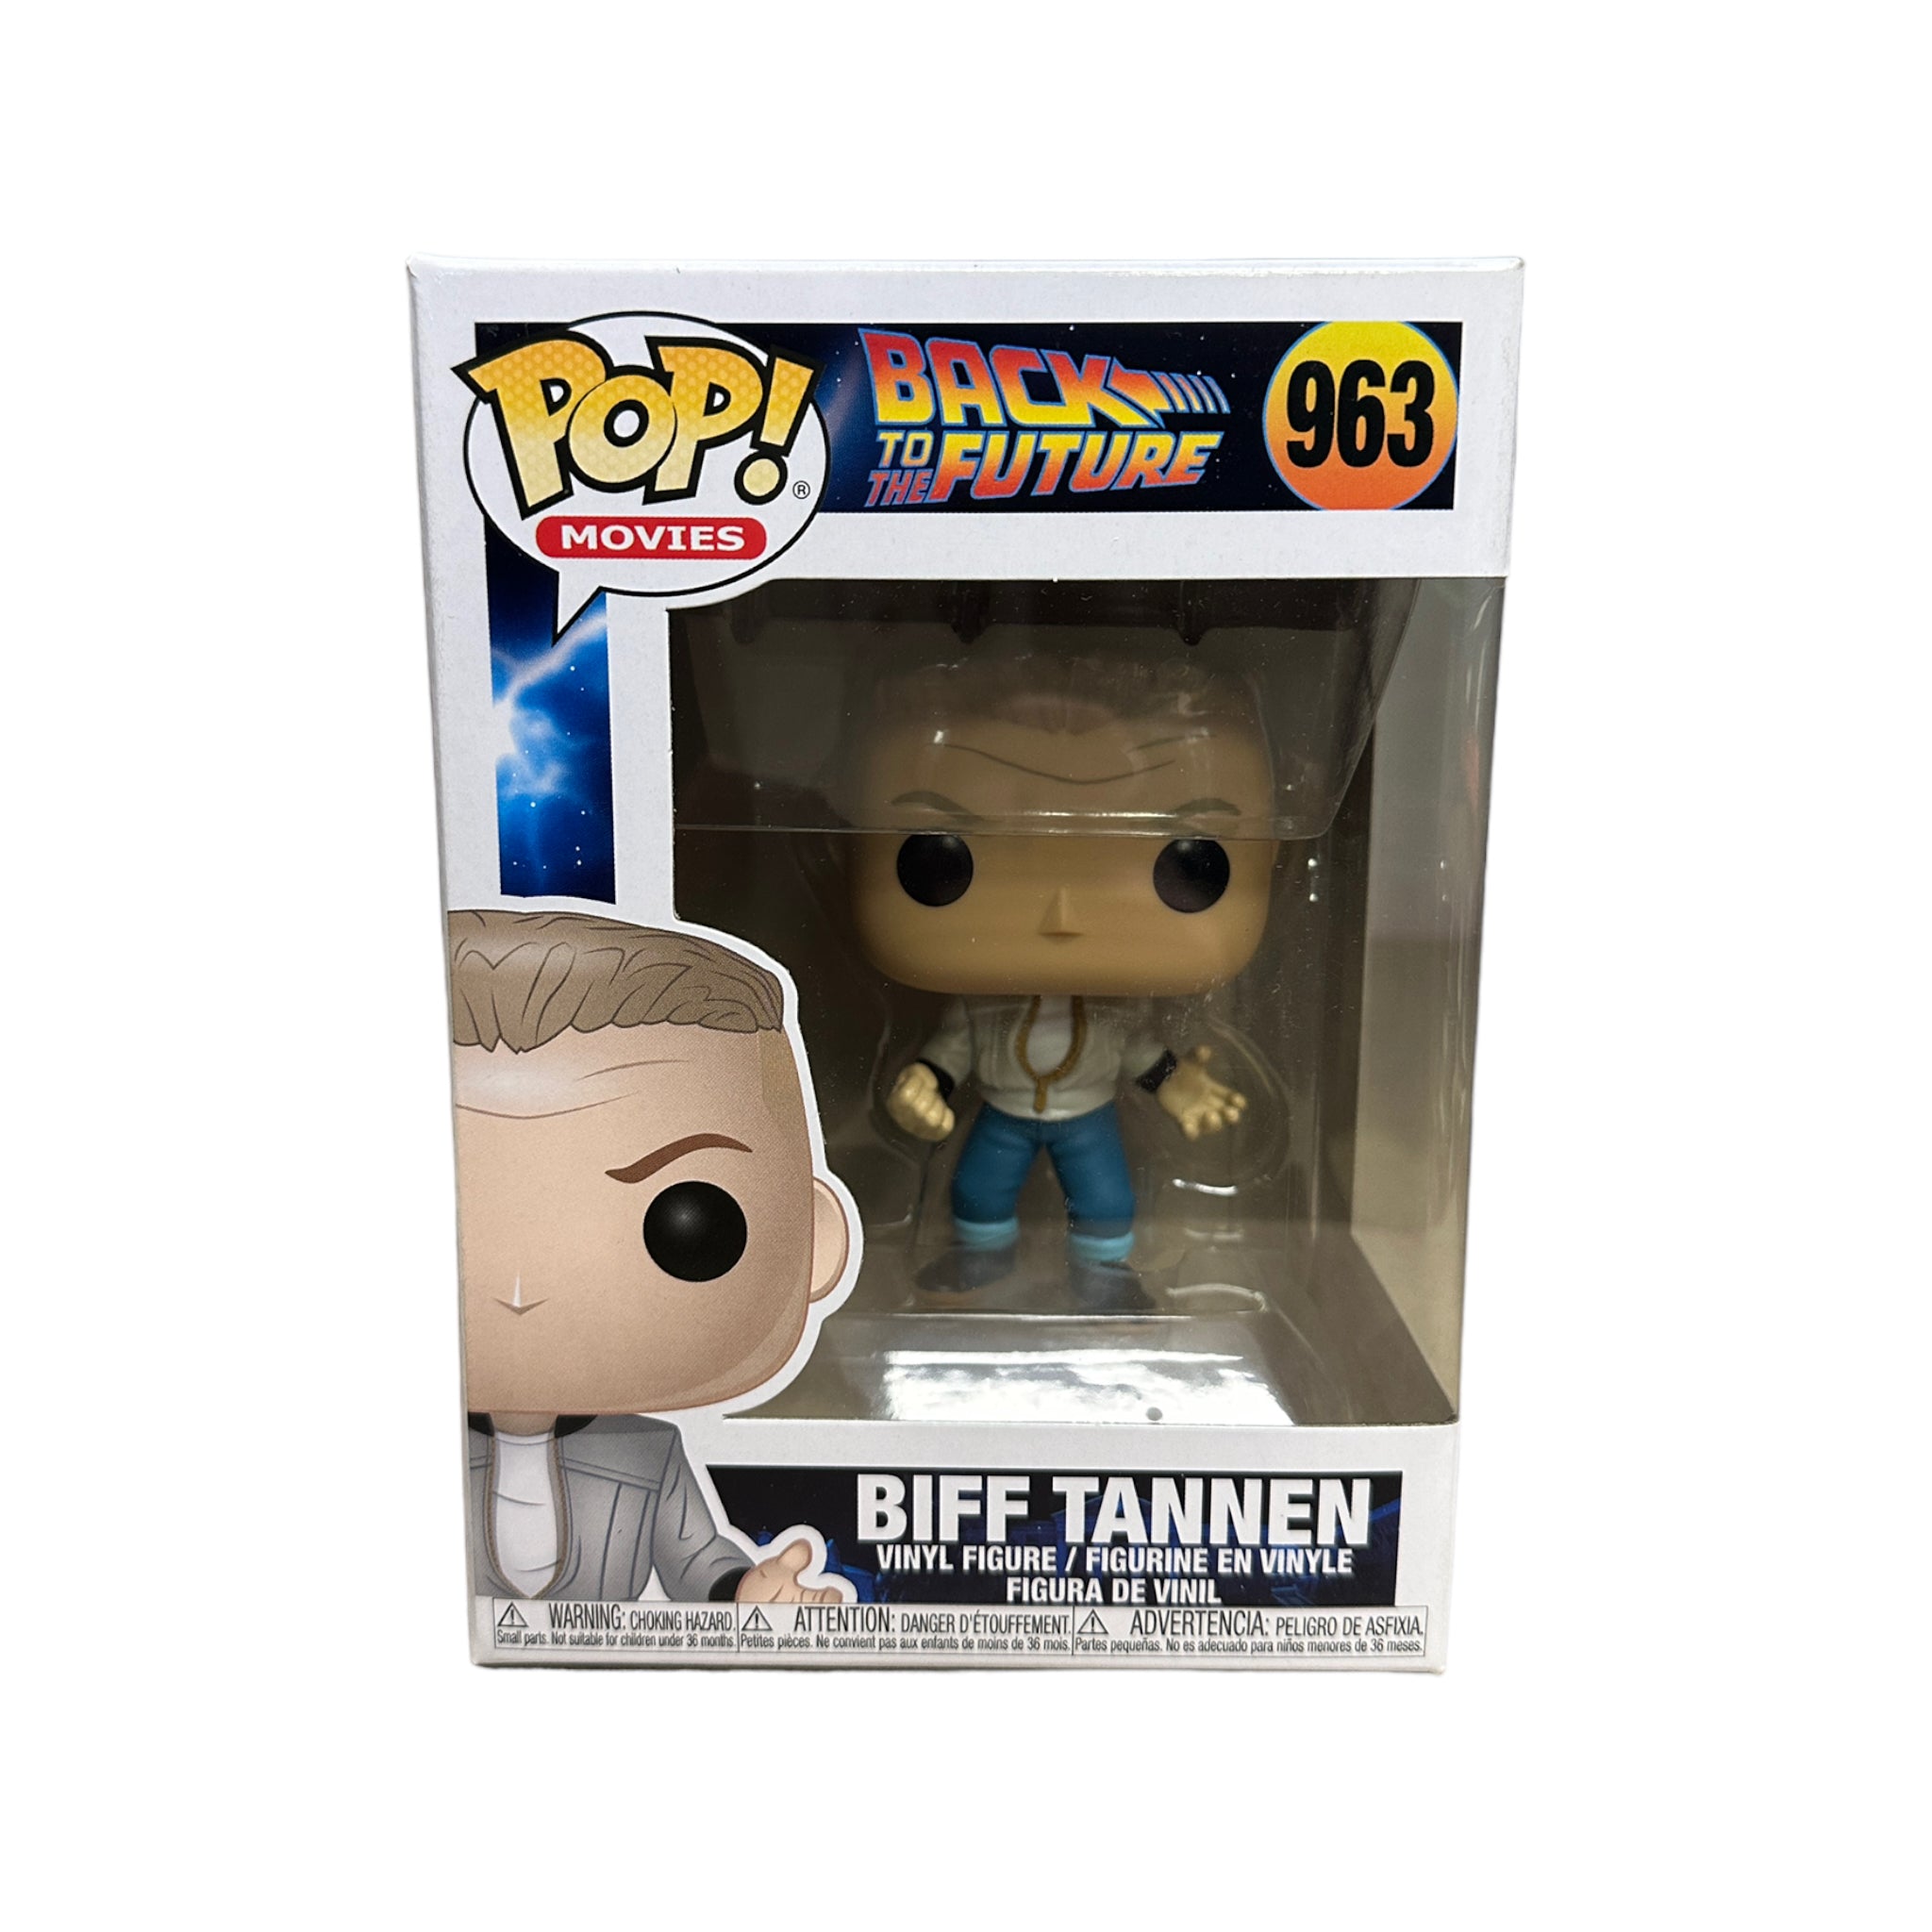 Biff Tannen #963 Funko Pop! - Back to The Future - 2020 Pop! - Condition 8.5/10